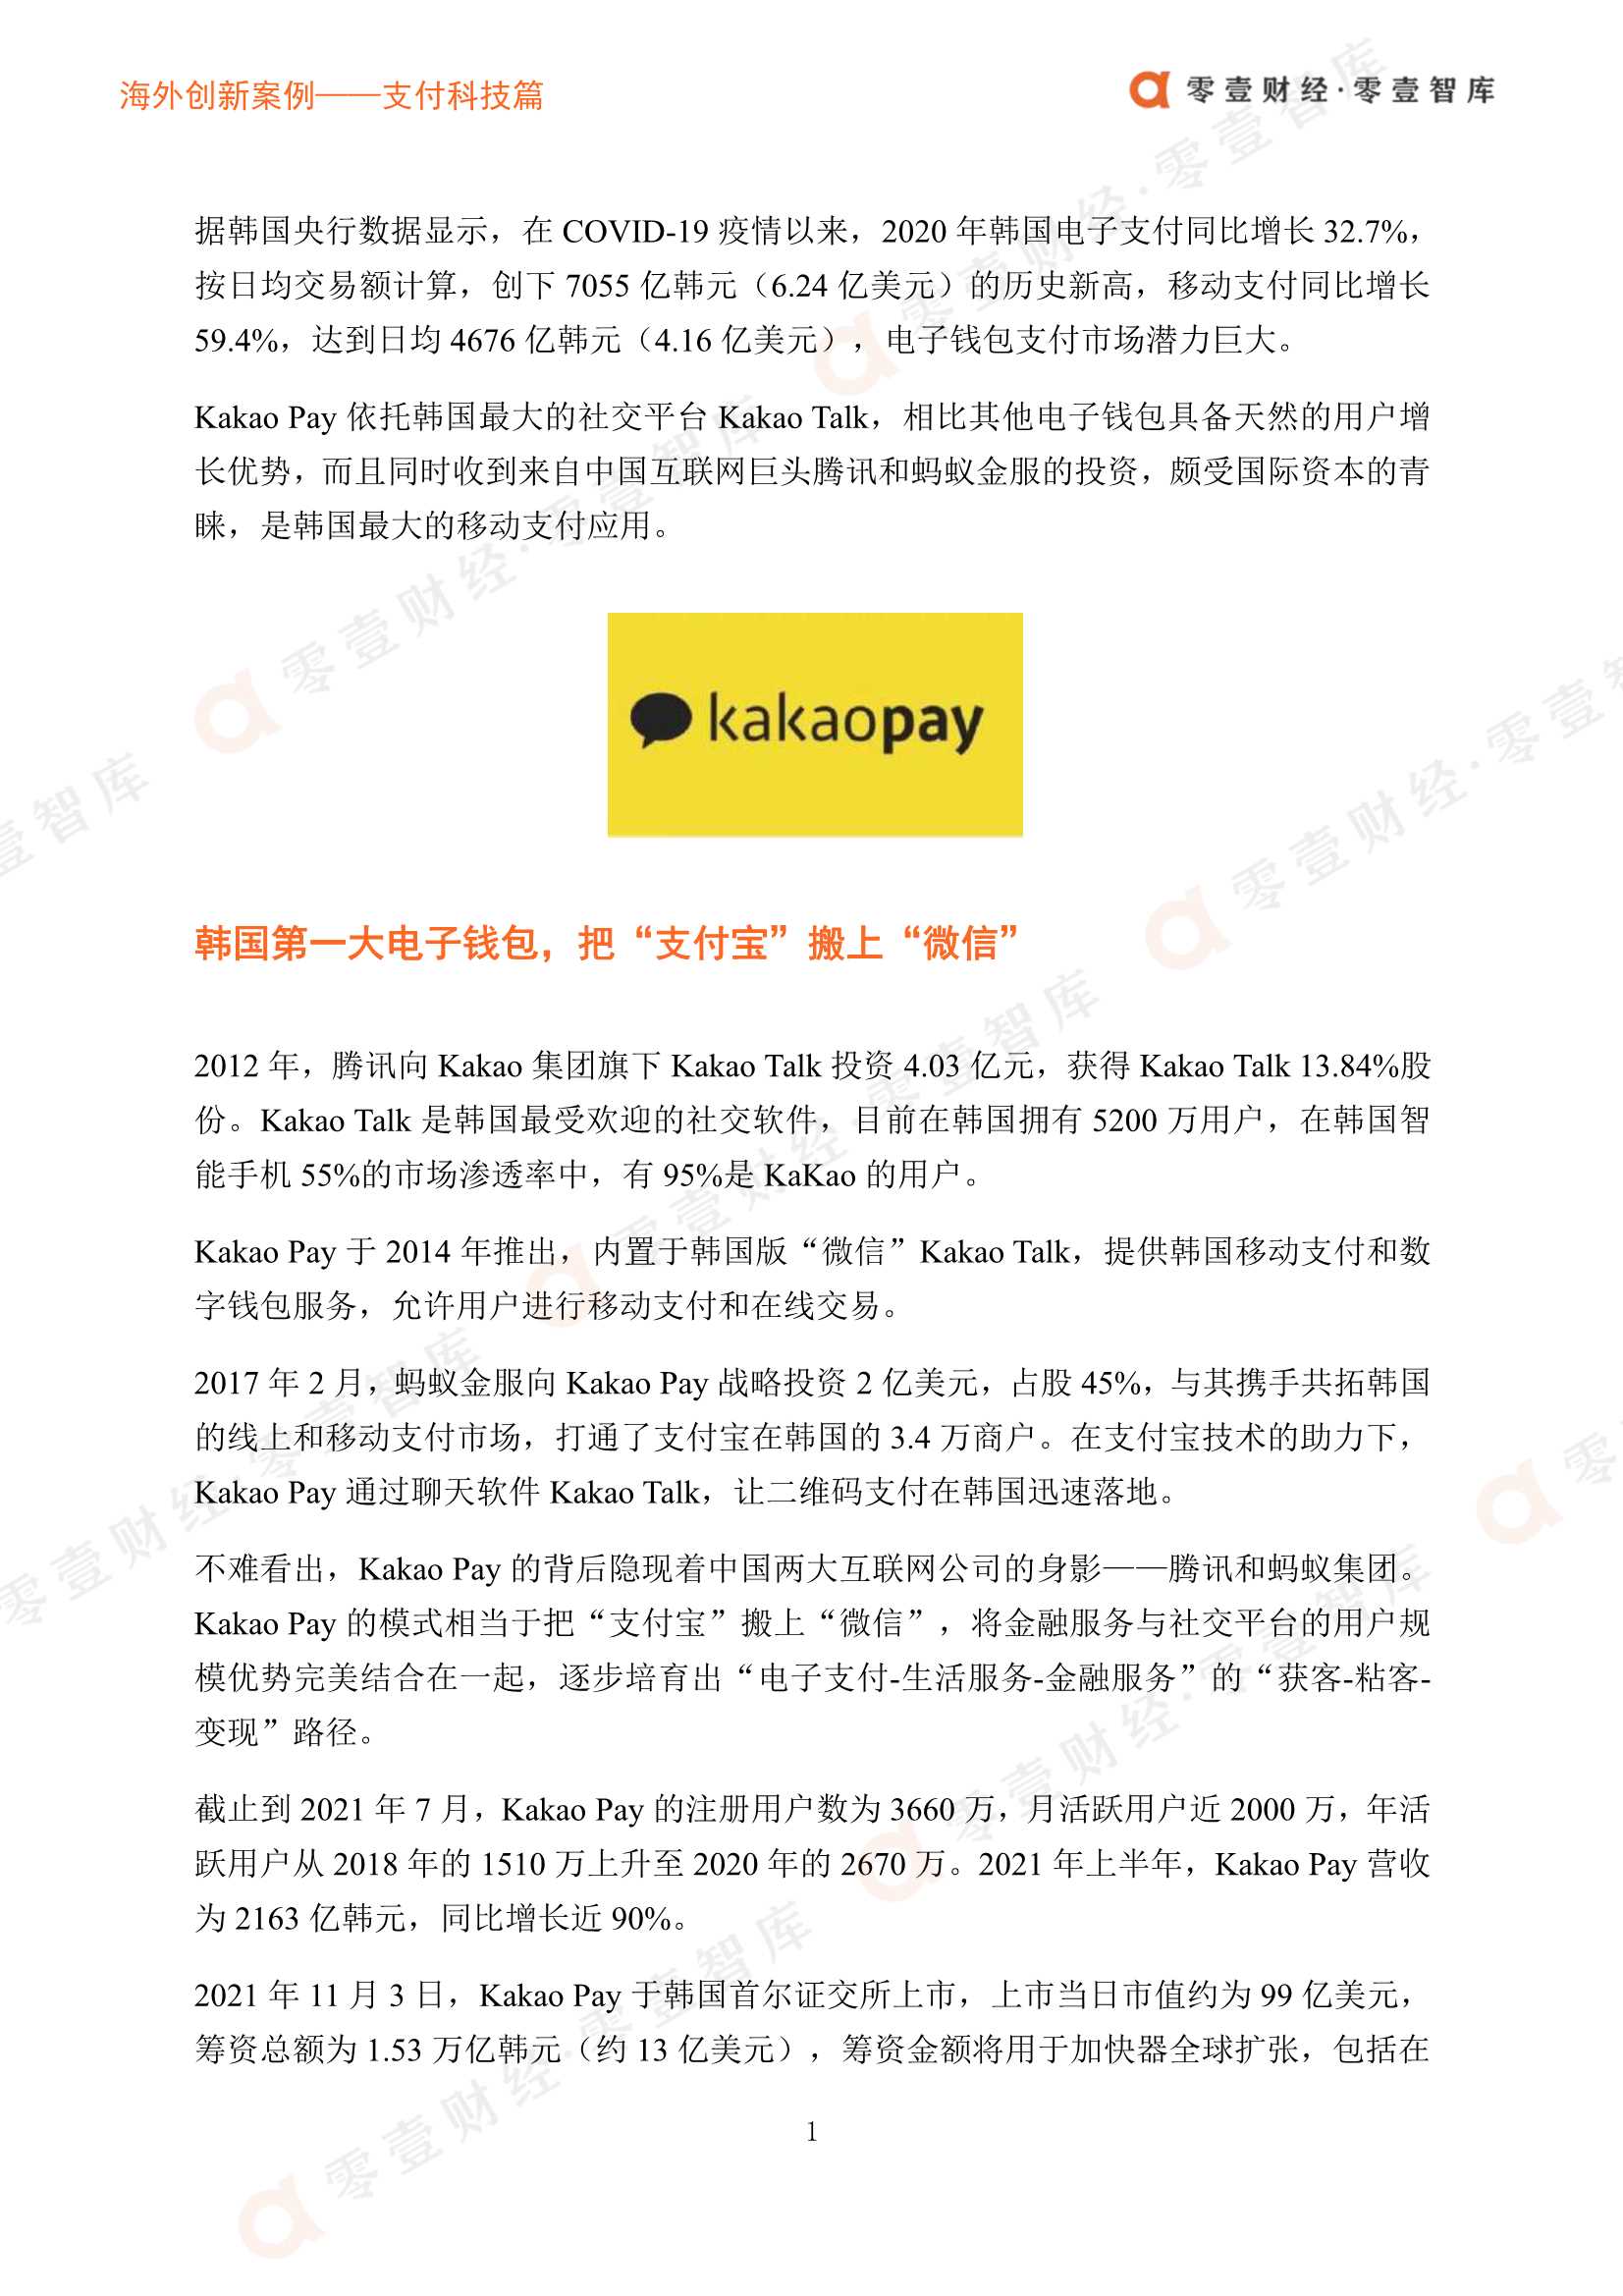 零壹智库-海外创新案例 Kakao Pay：把“支付宝”搬上“微信”，向综合金融服务进击-2021.12-8页